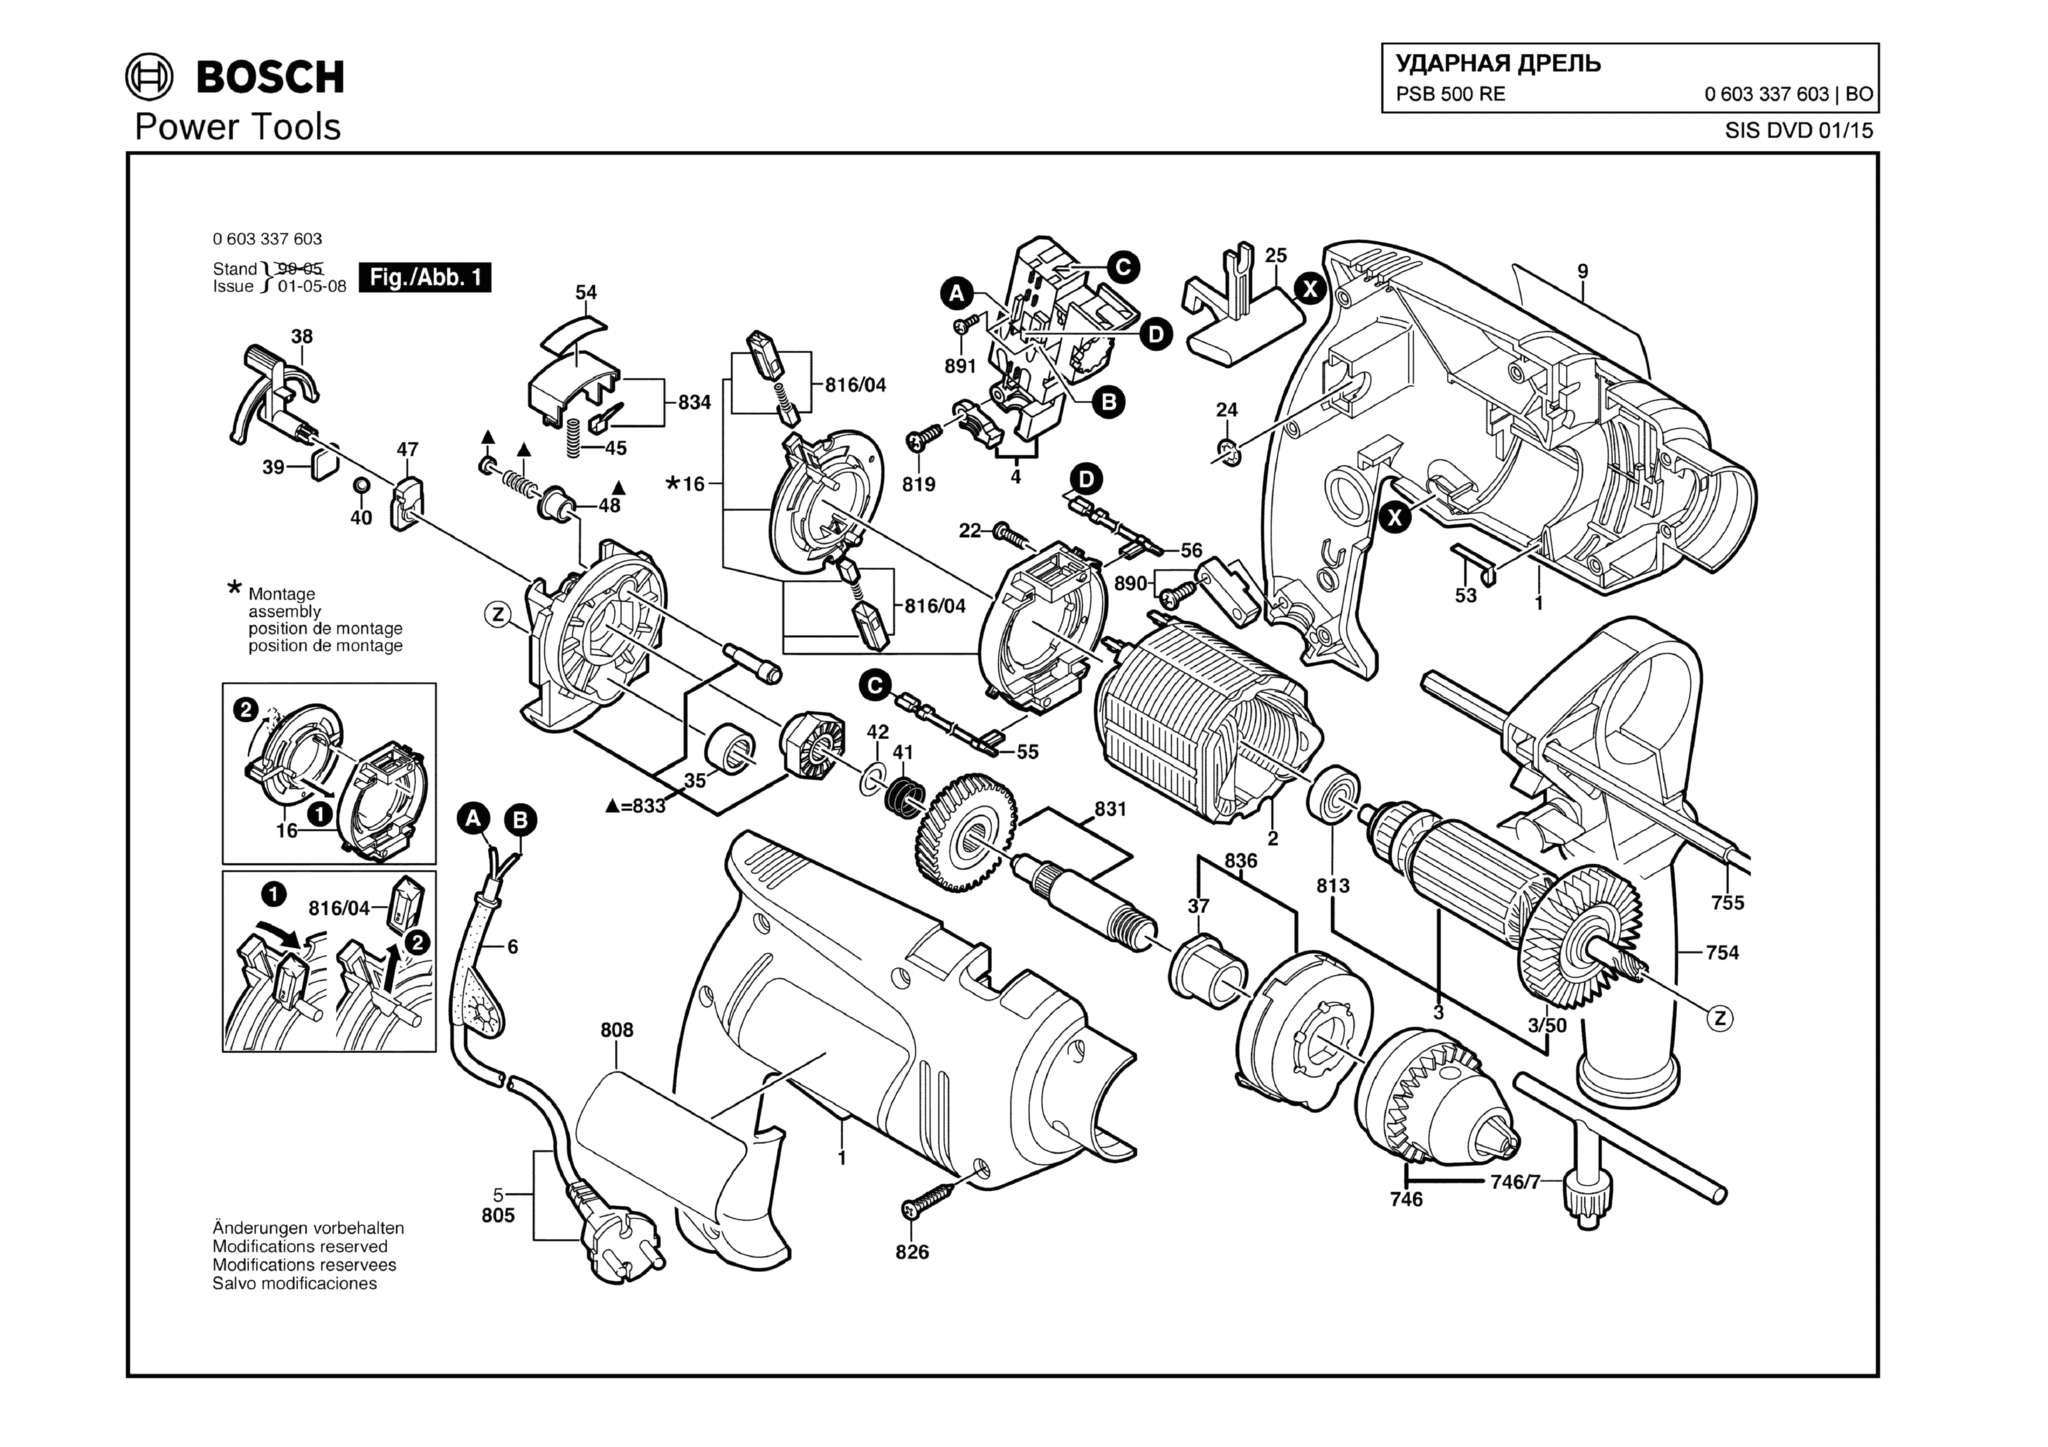 Запчасти, схема и деталировка Bosch PSB 500 RE (ТИП 0603337603)